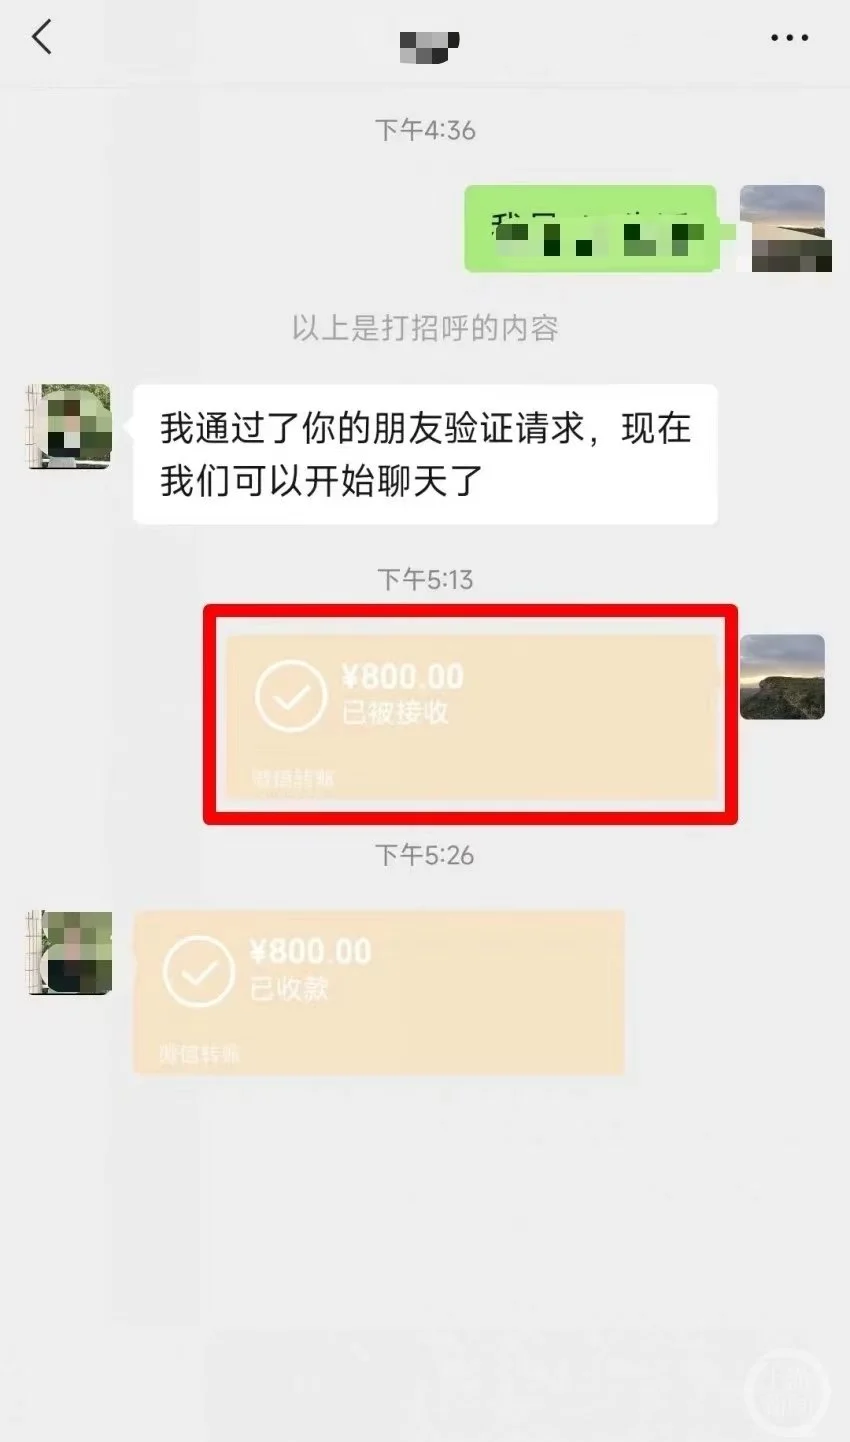 ▲甄师傅称，自己向小卖部老板转了800元。